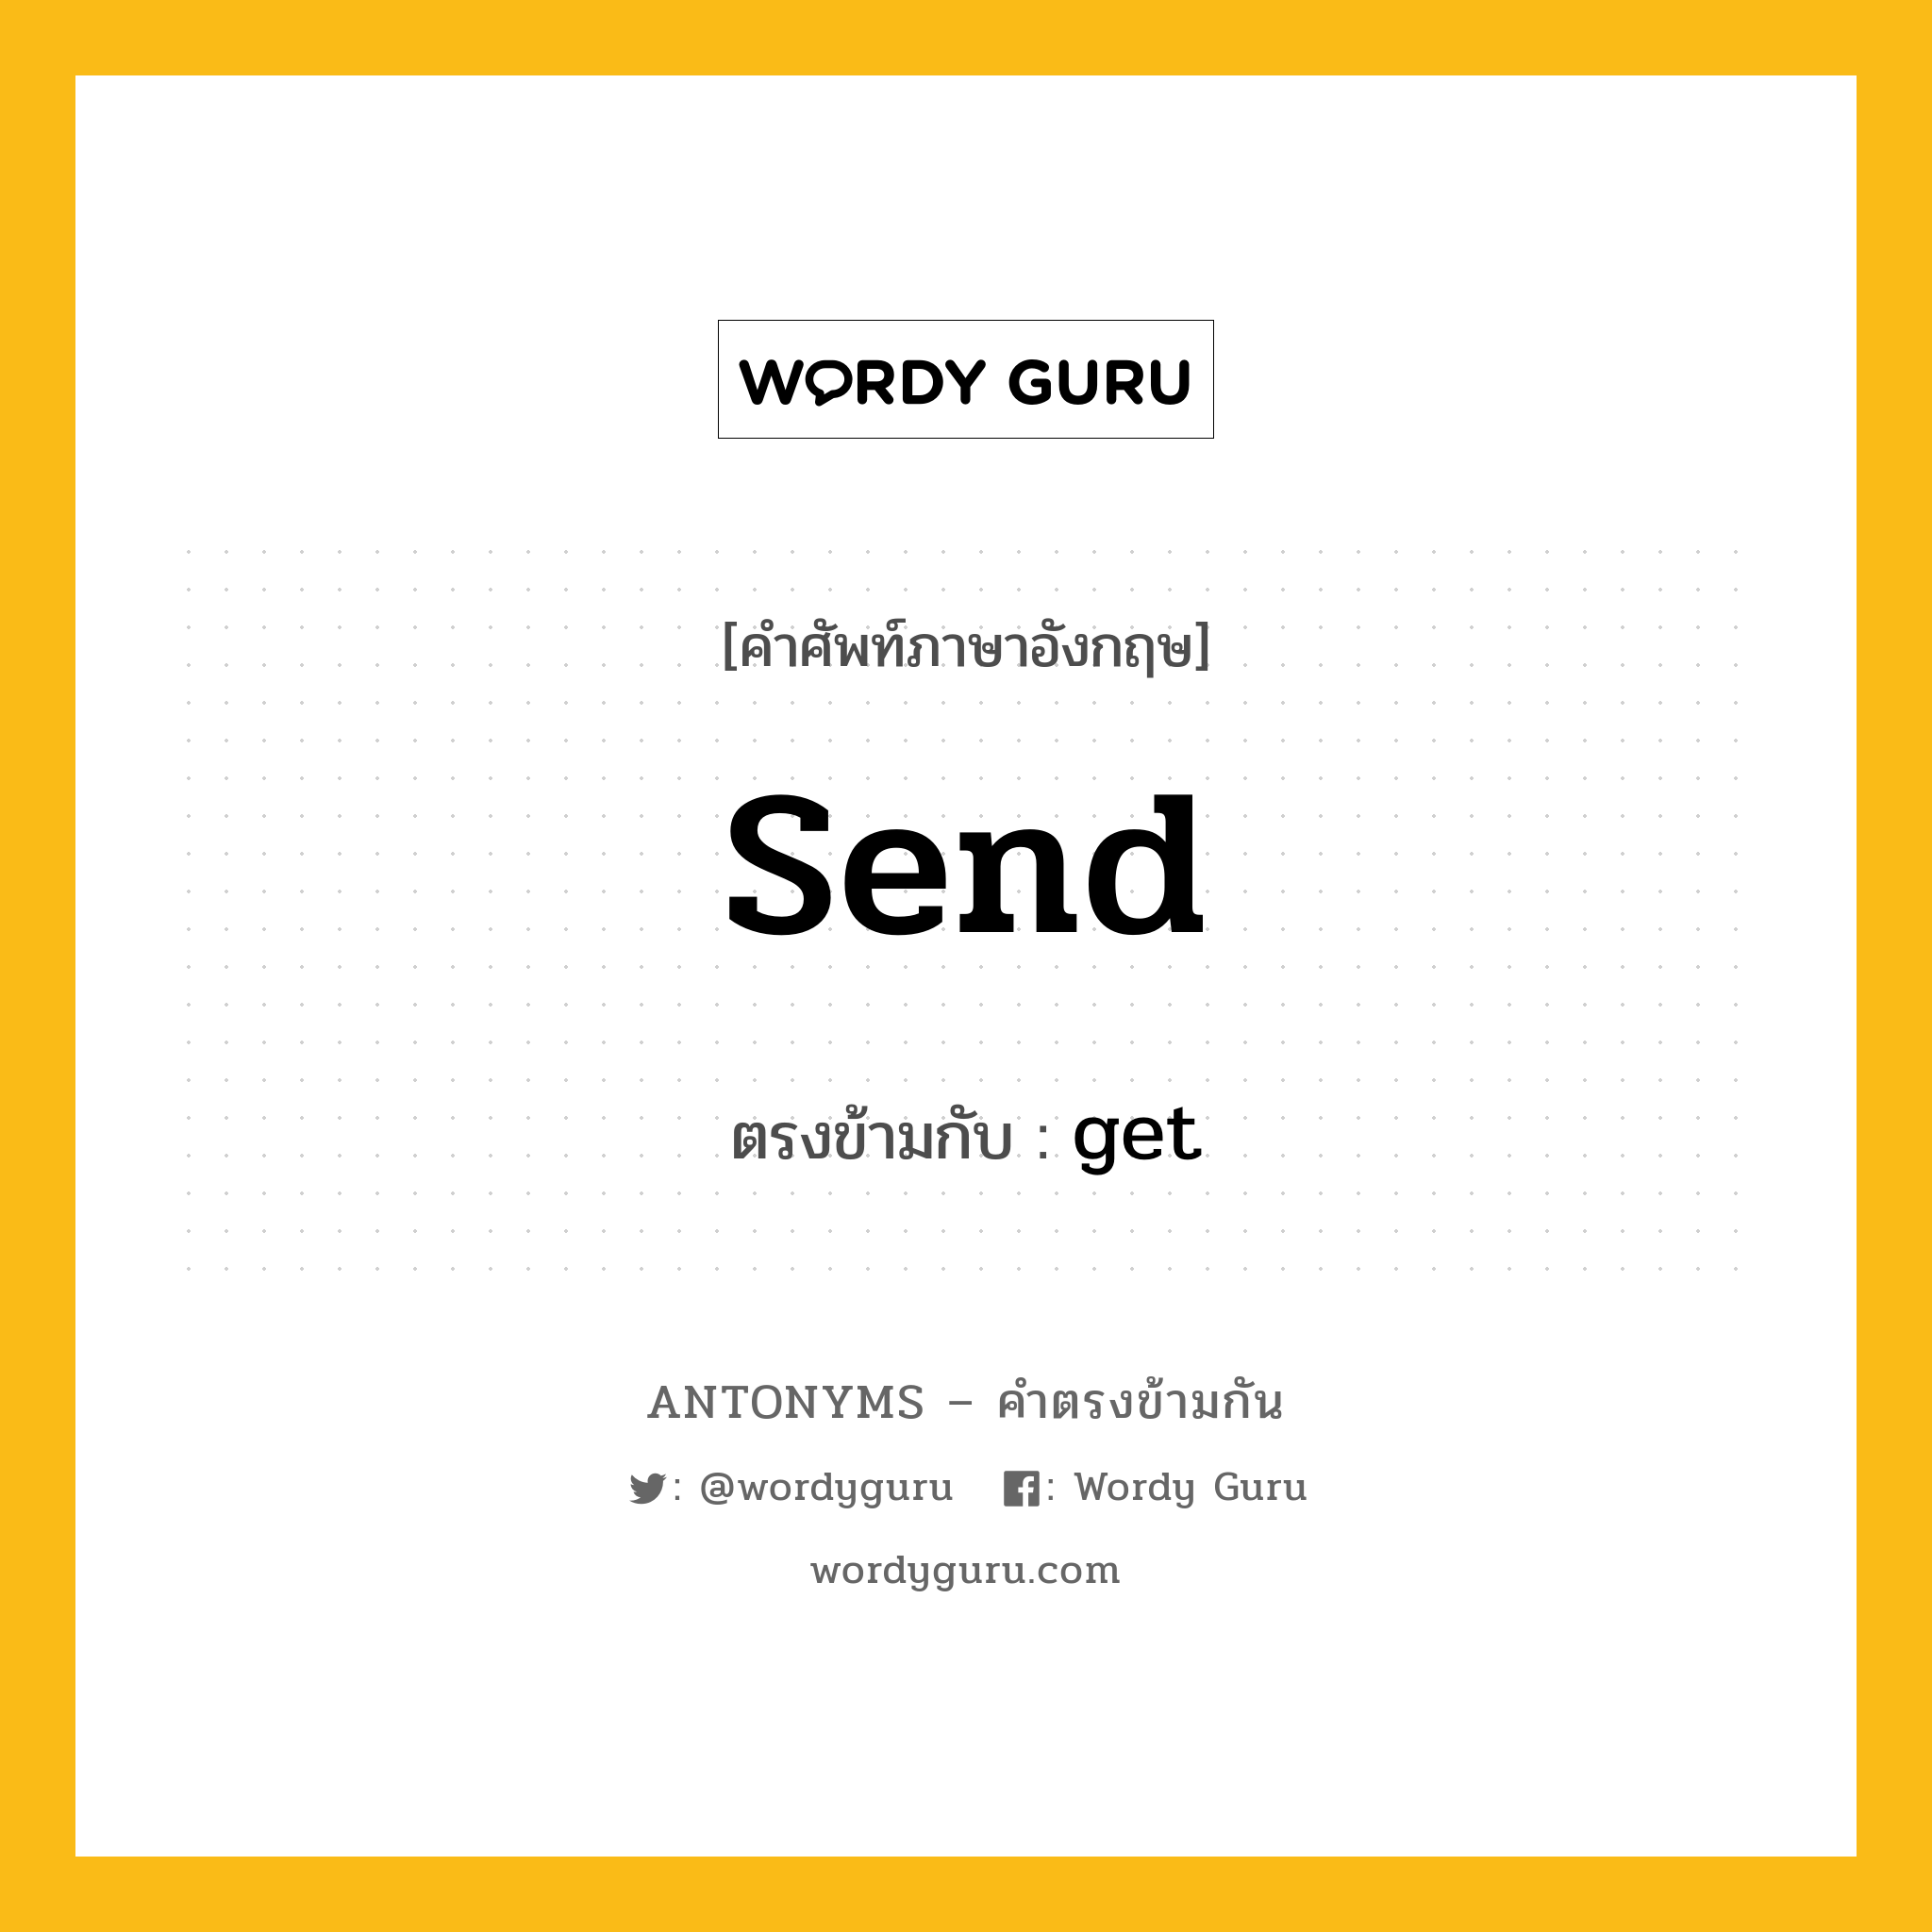 send เป็นคำตรงข้ามกับคำไหนบ้าง?, คำศัพท์ภาษาอังกฤษ send ตรงข้ามกับ get หมวด get